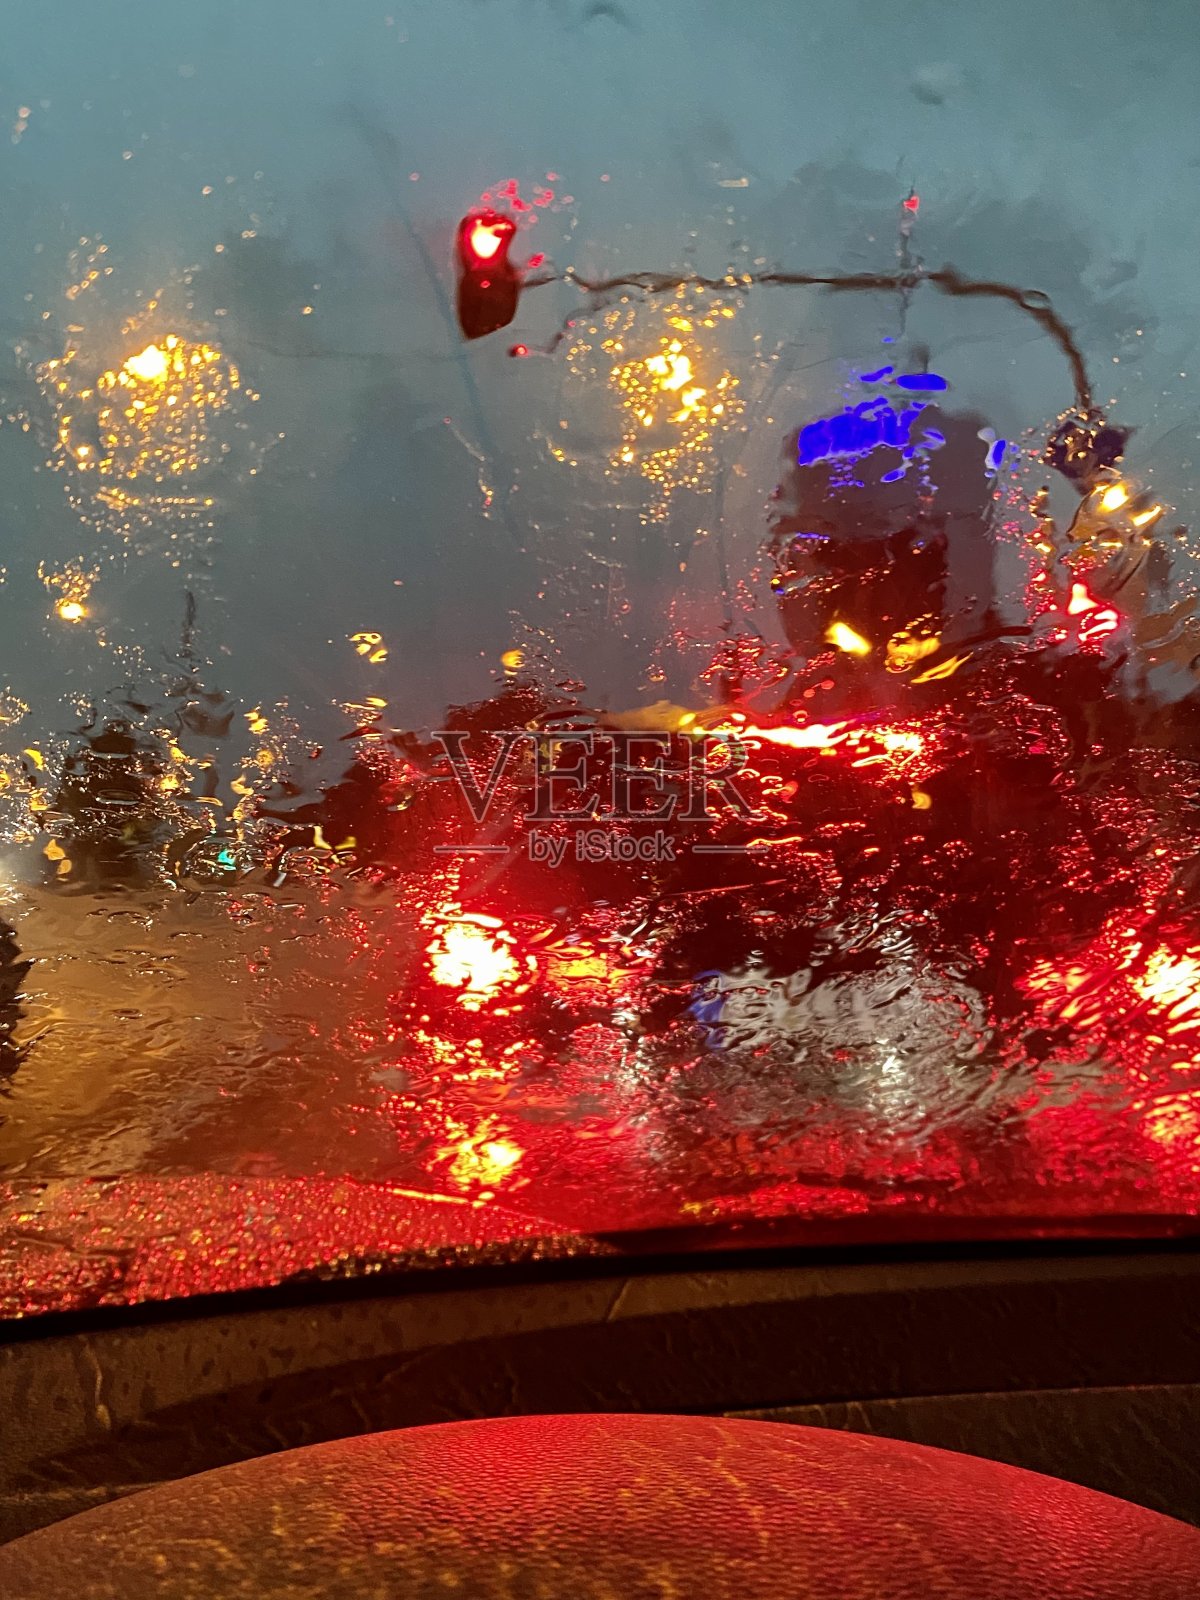 透过被雨弄脏的车窗可以看到城市的交通灯照片摄影图片